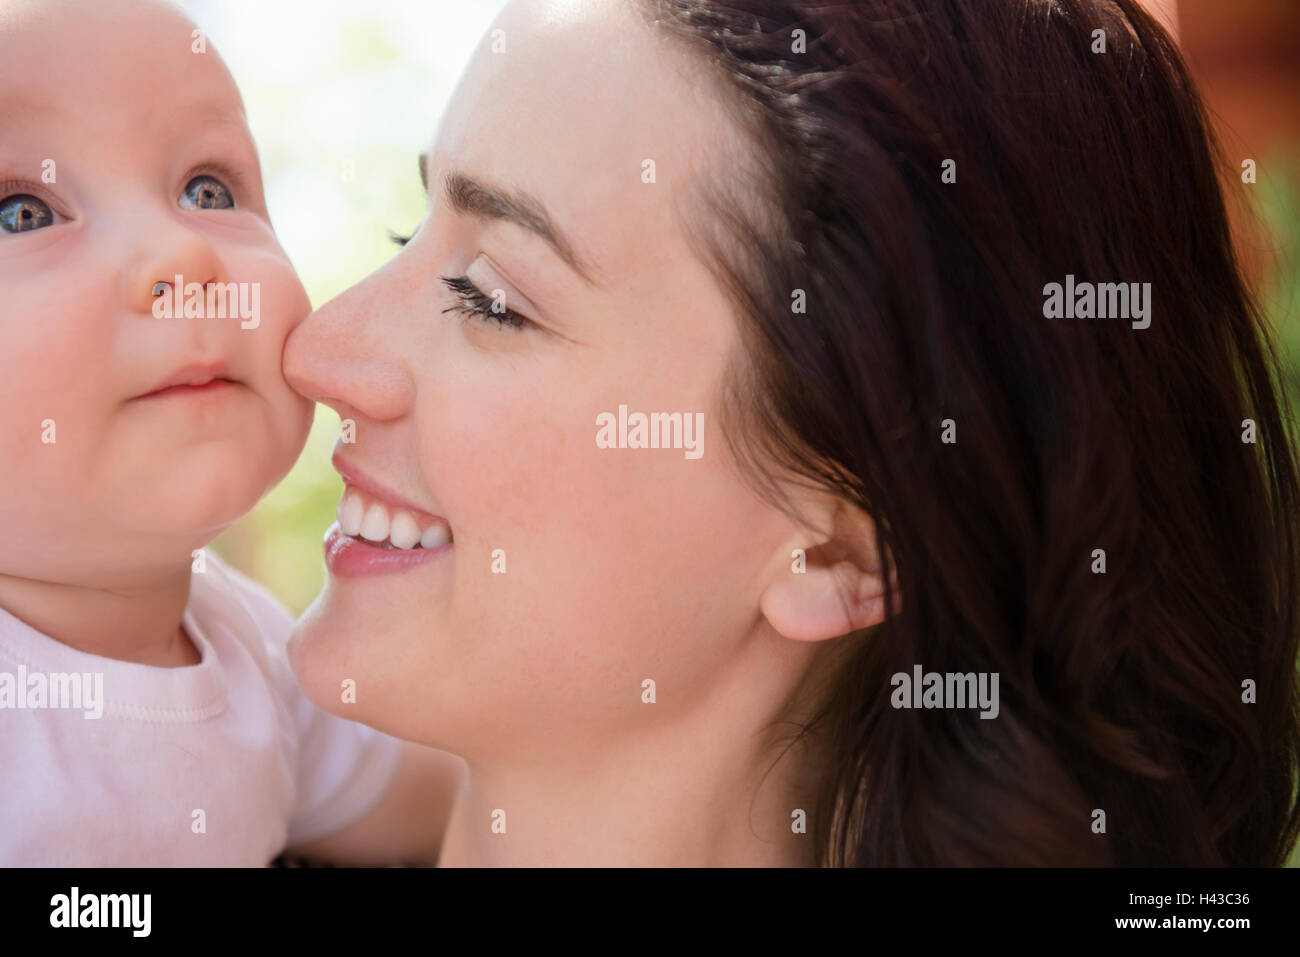 Mère de race blanche se frottant le nez sur la joue de son bébé Banque D'Images